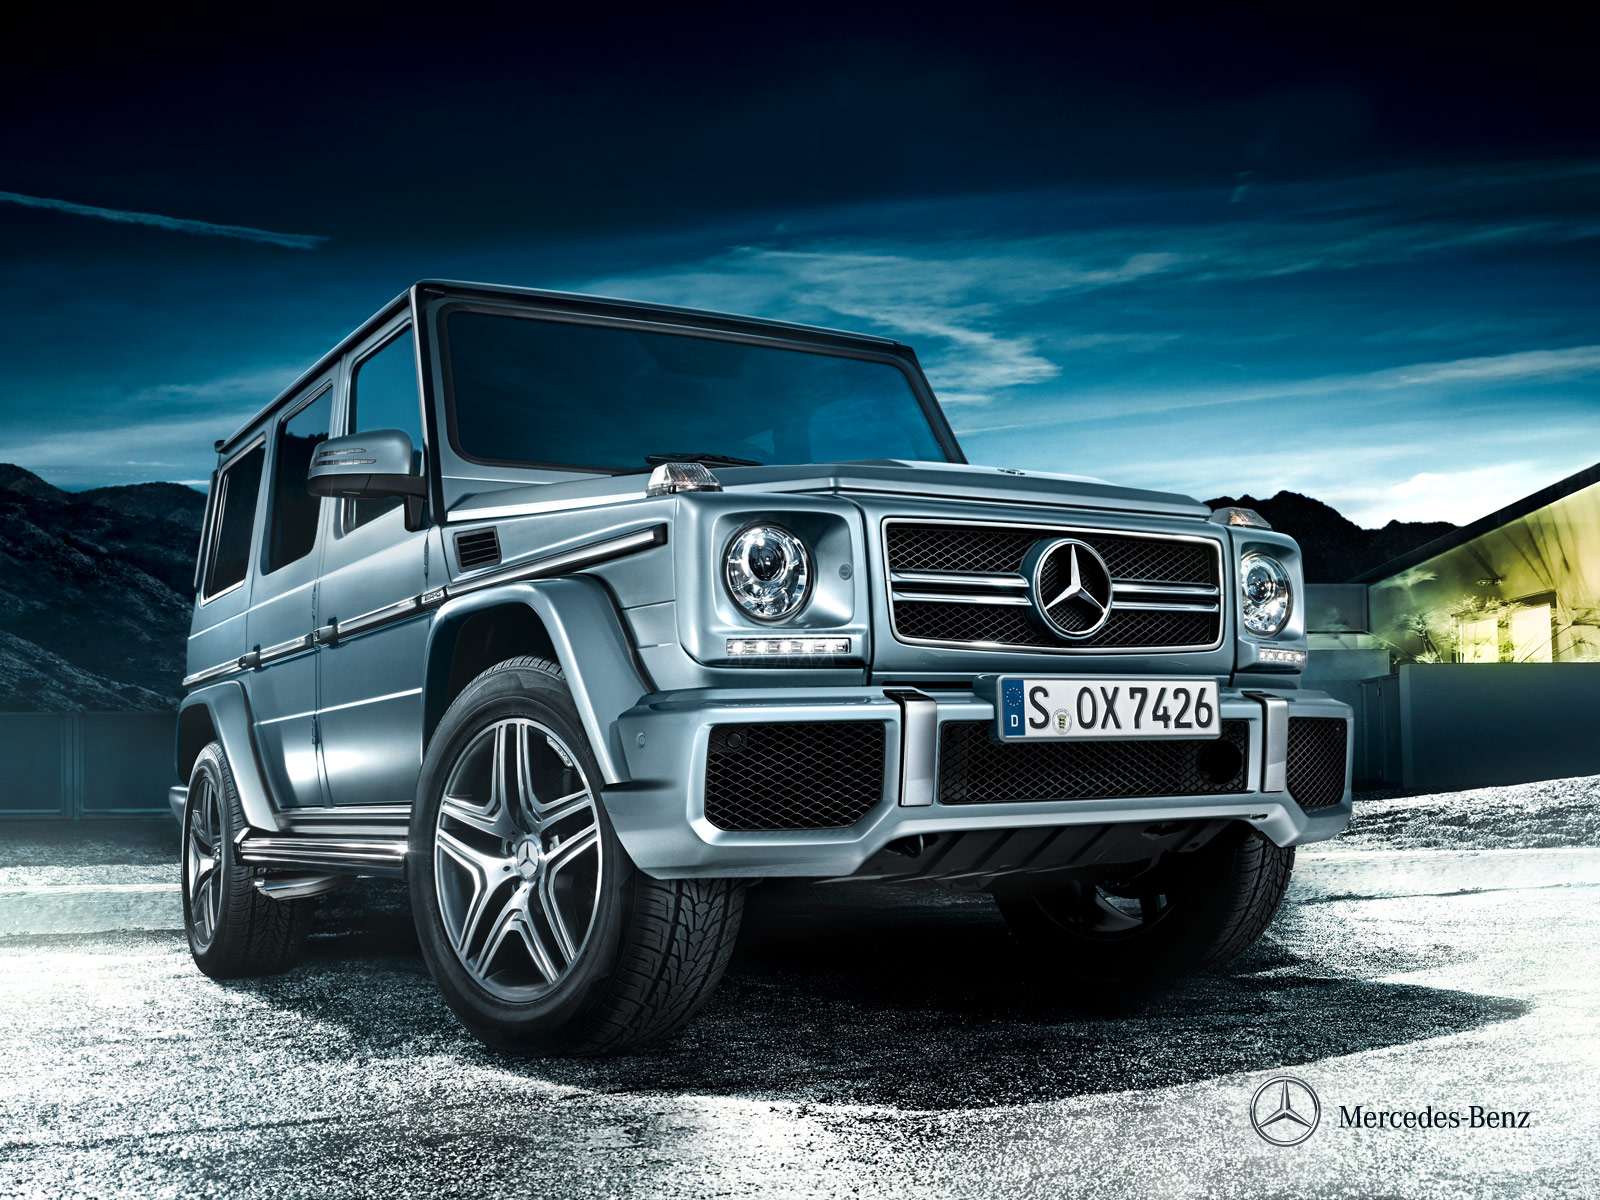 Mercedes Benz G Class HQ Pics Worlds Greatest Art Site